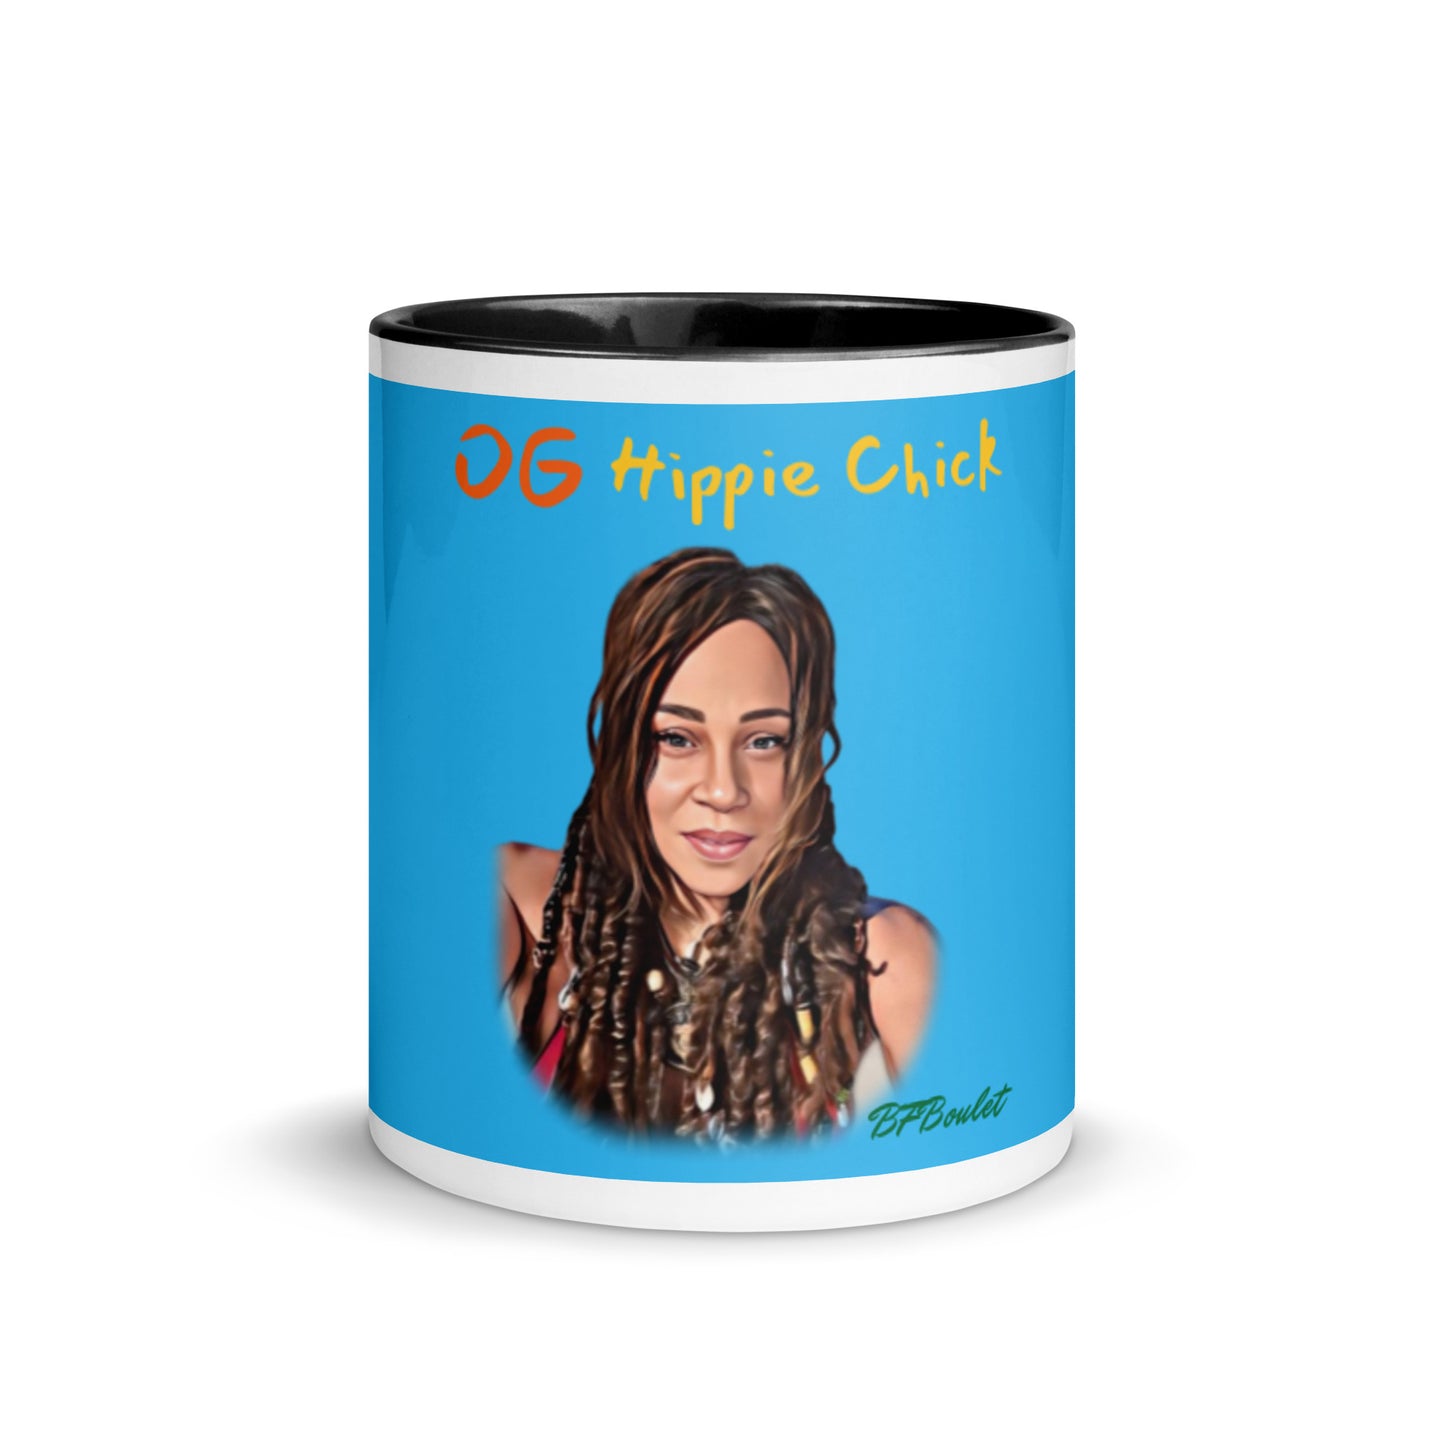 Sky Blue Color Mug - OG Hippie Chick (BFBoulet)